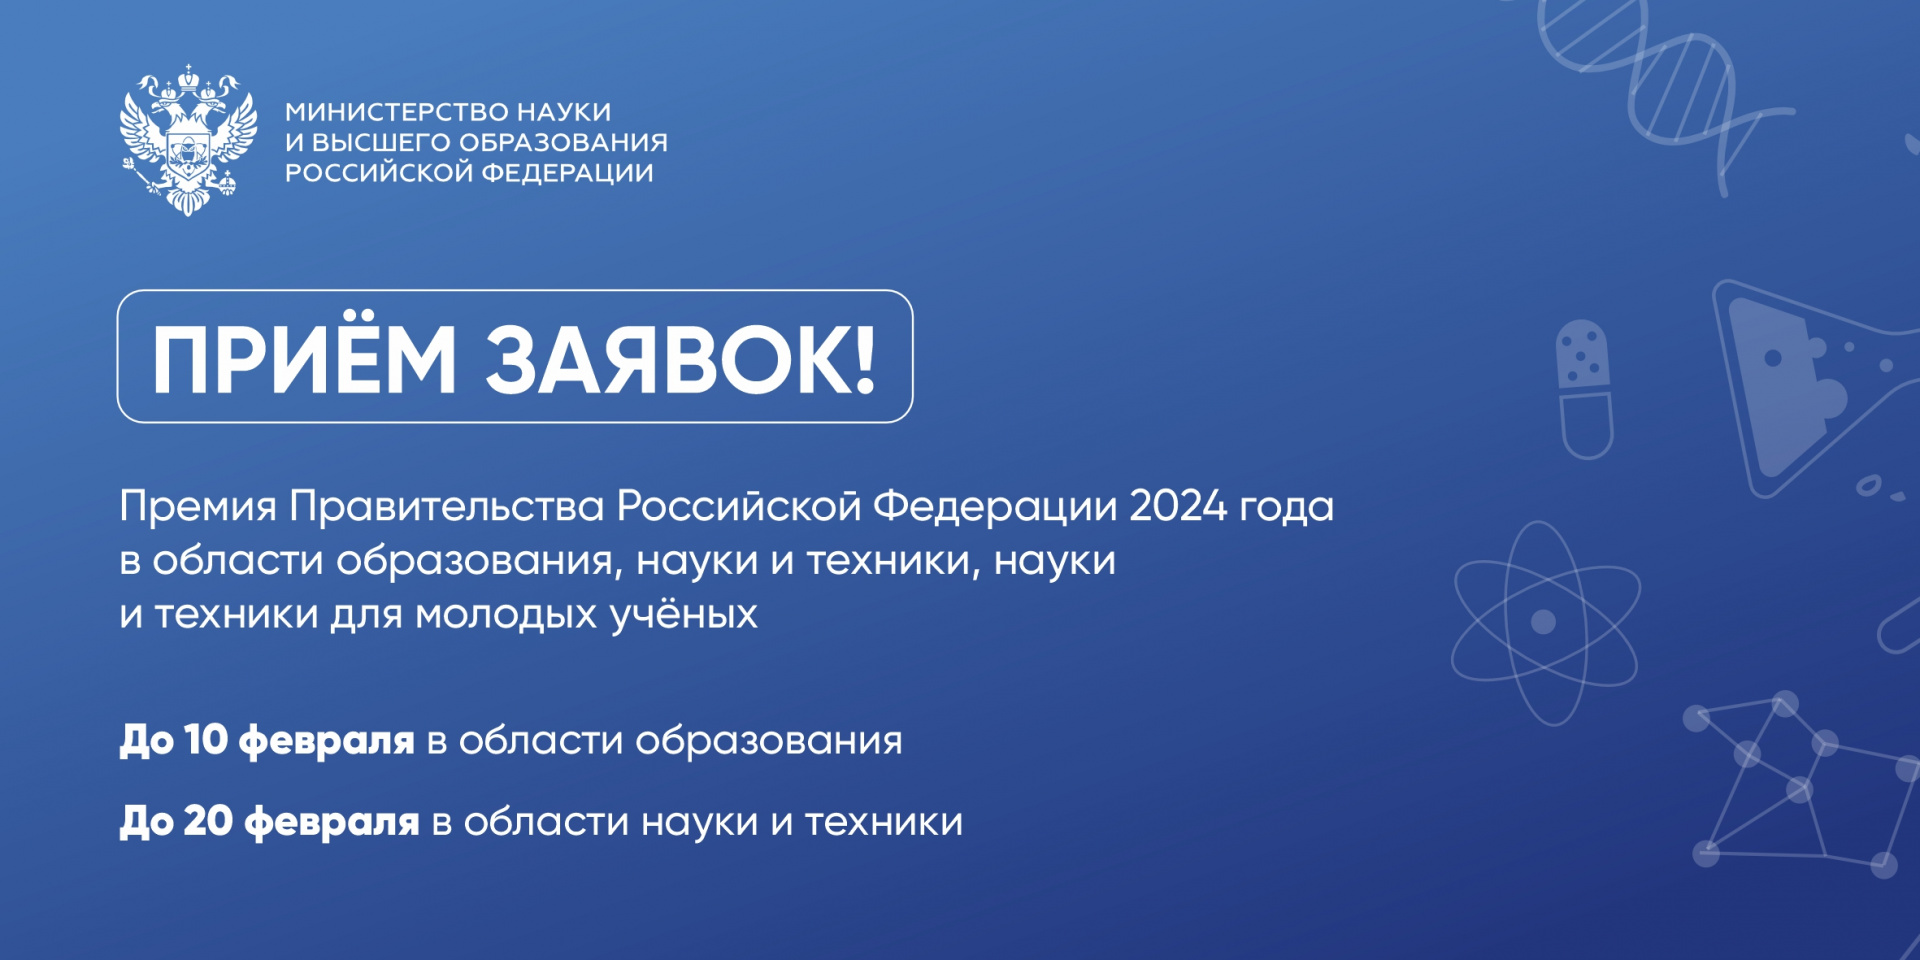 Начался приём заявок на соискание премий Правительства Российской Федерации 2024 года